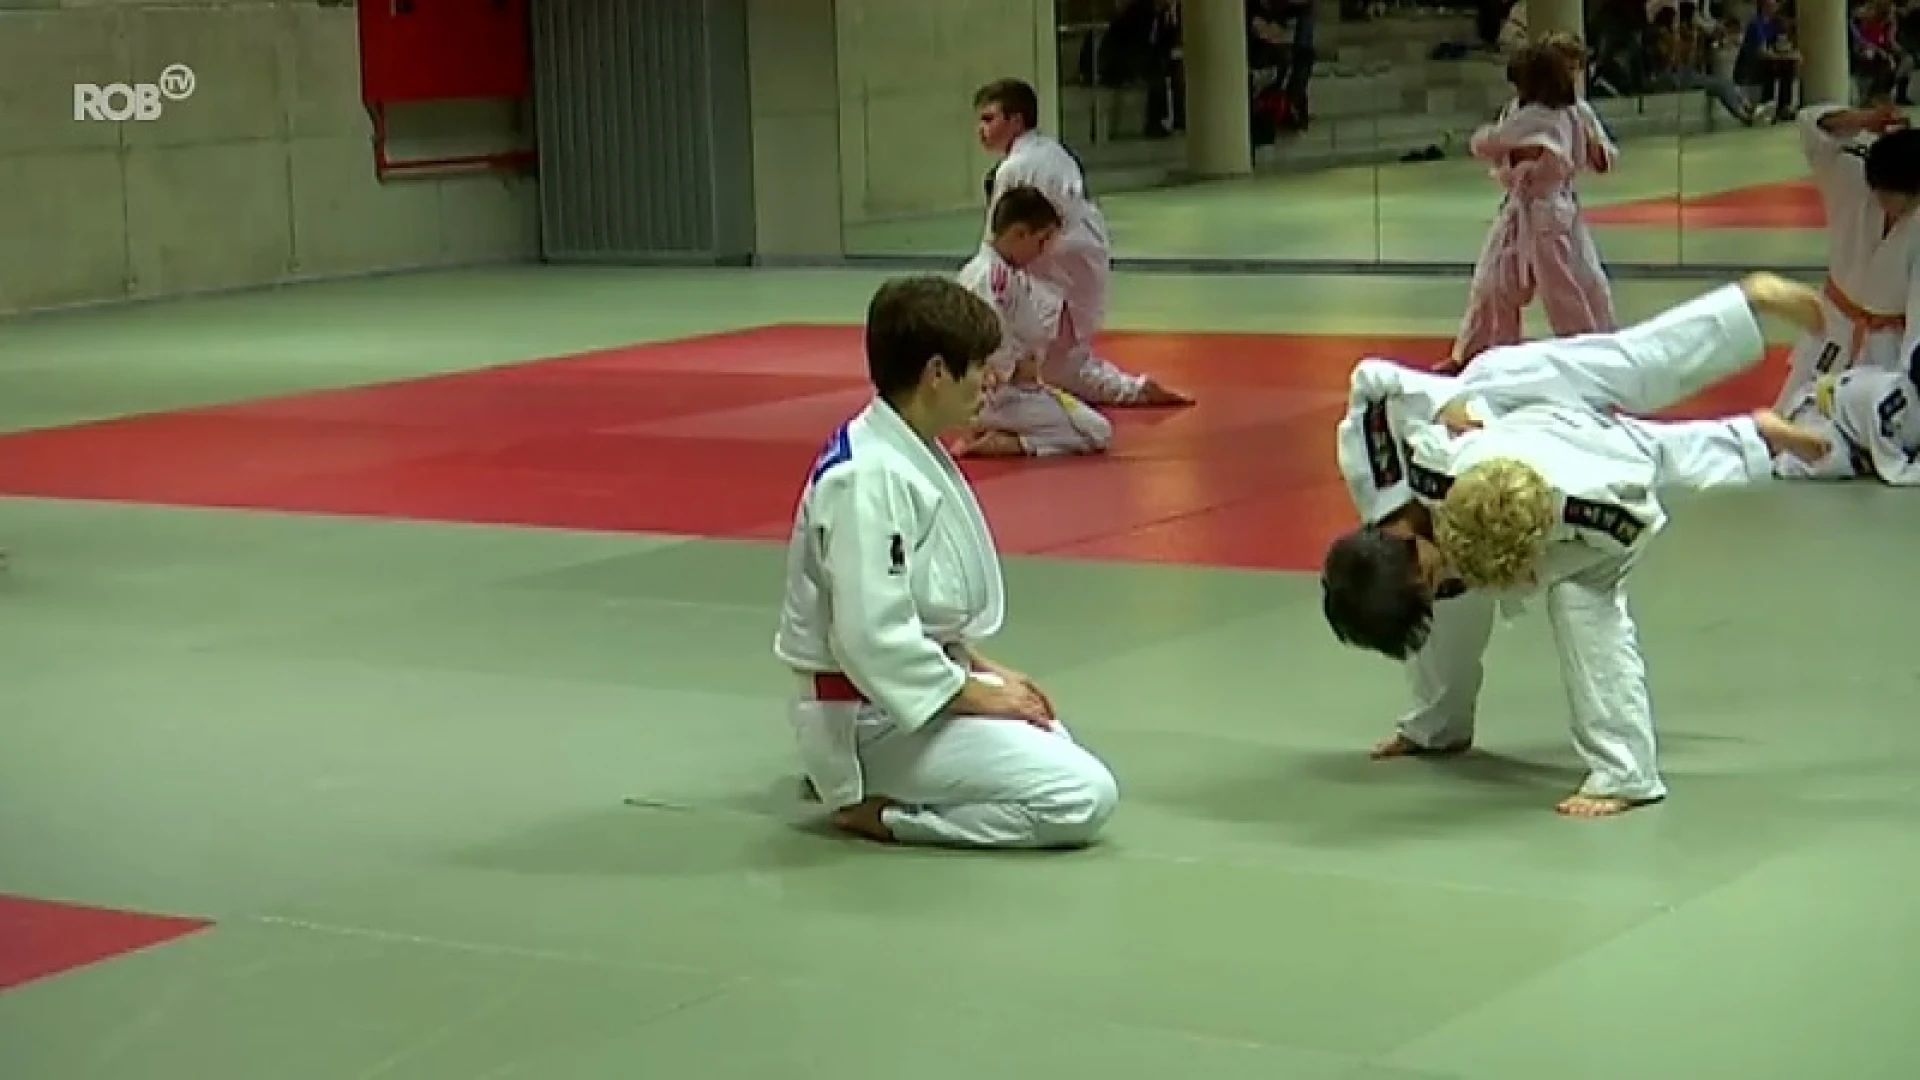 "Je krijgt niet elke dag van zo'n ster training": Ilse Heylen leert jonge judoka's kneepjes van het vak